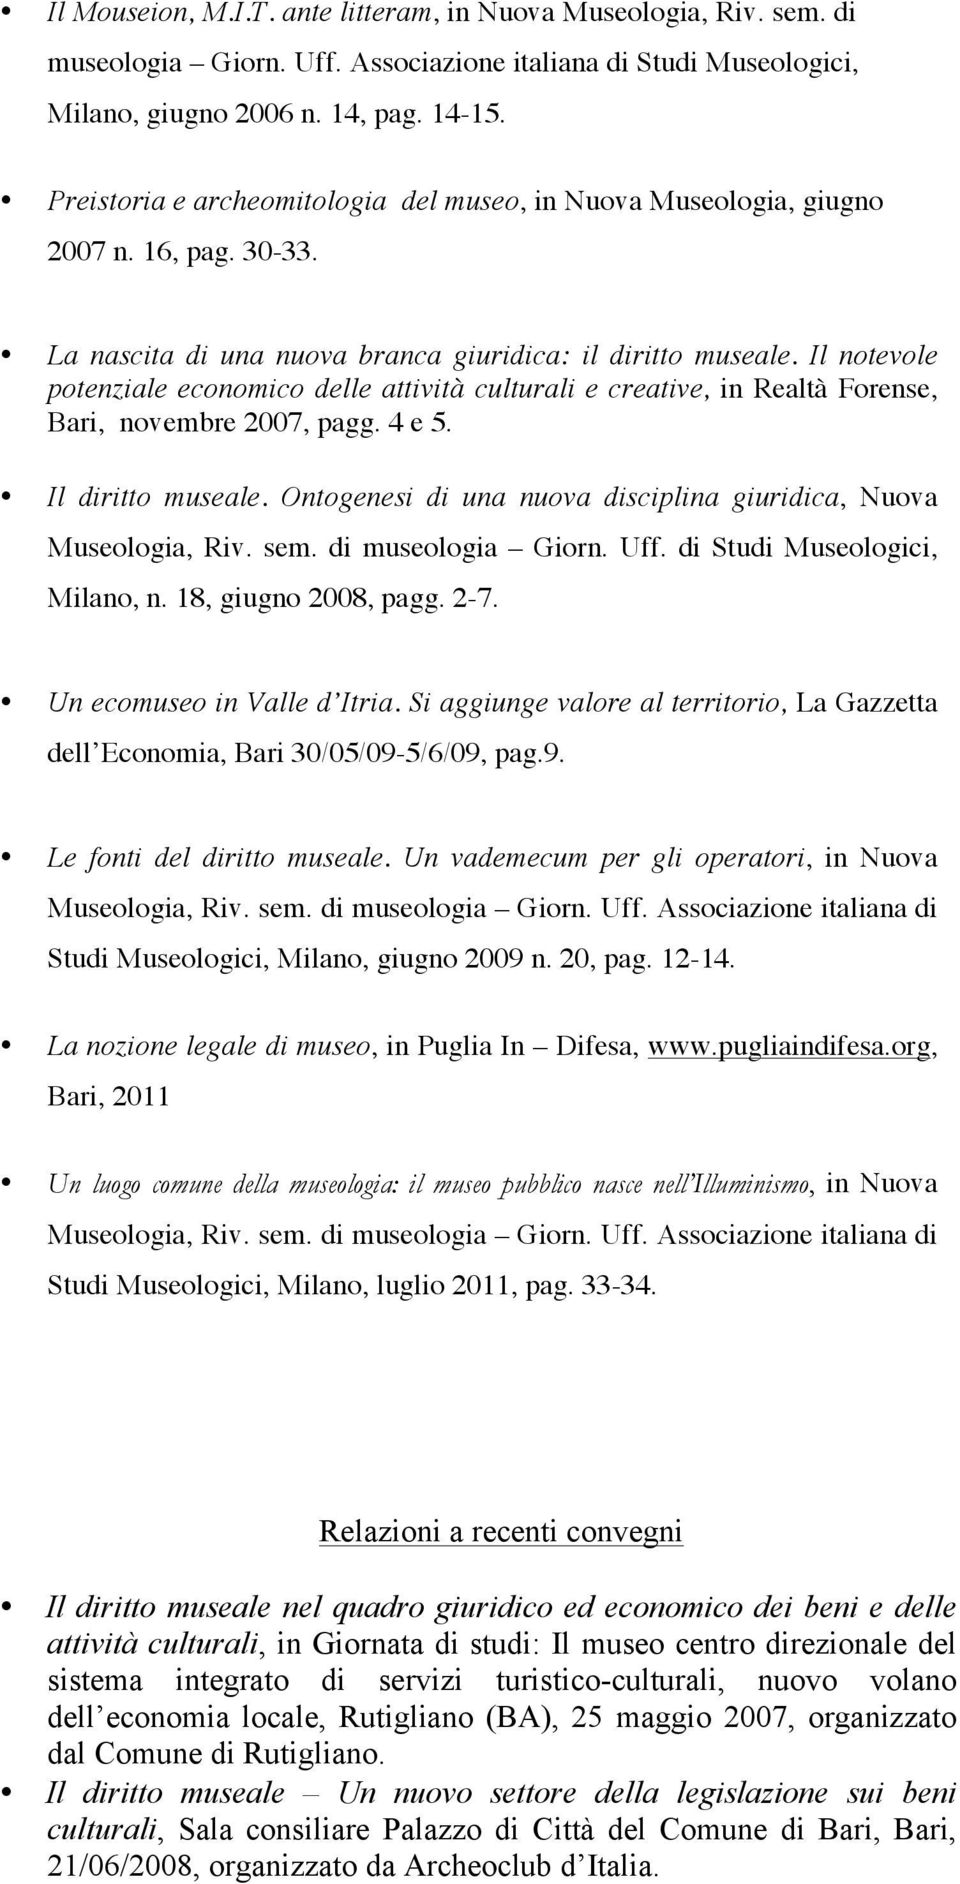 Il notevole potenziale economico delle attività culturali e creative, in Realtà Forense, Bari, novembre 2007, pagg. 4 e 5. Il diritto museale.